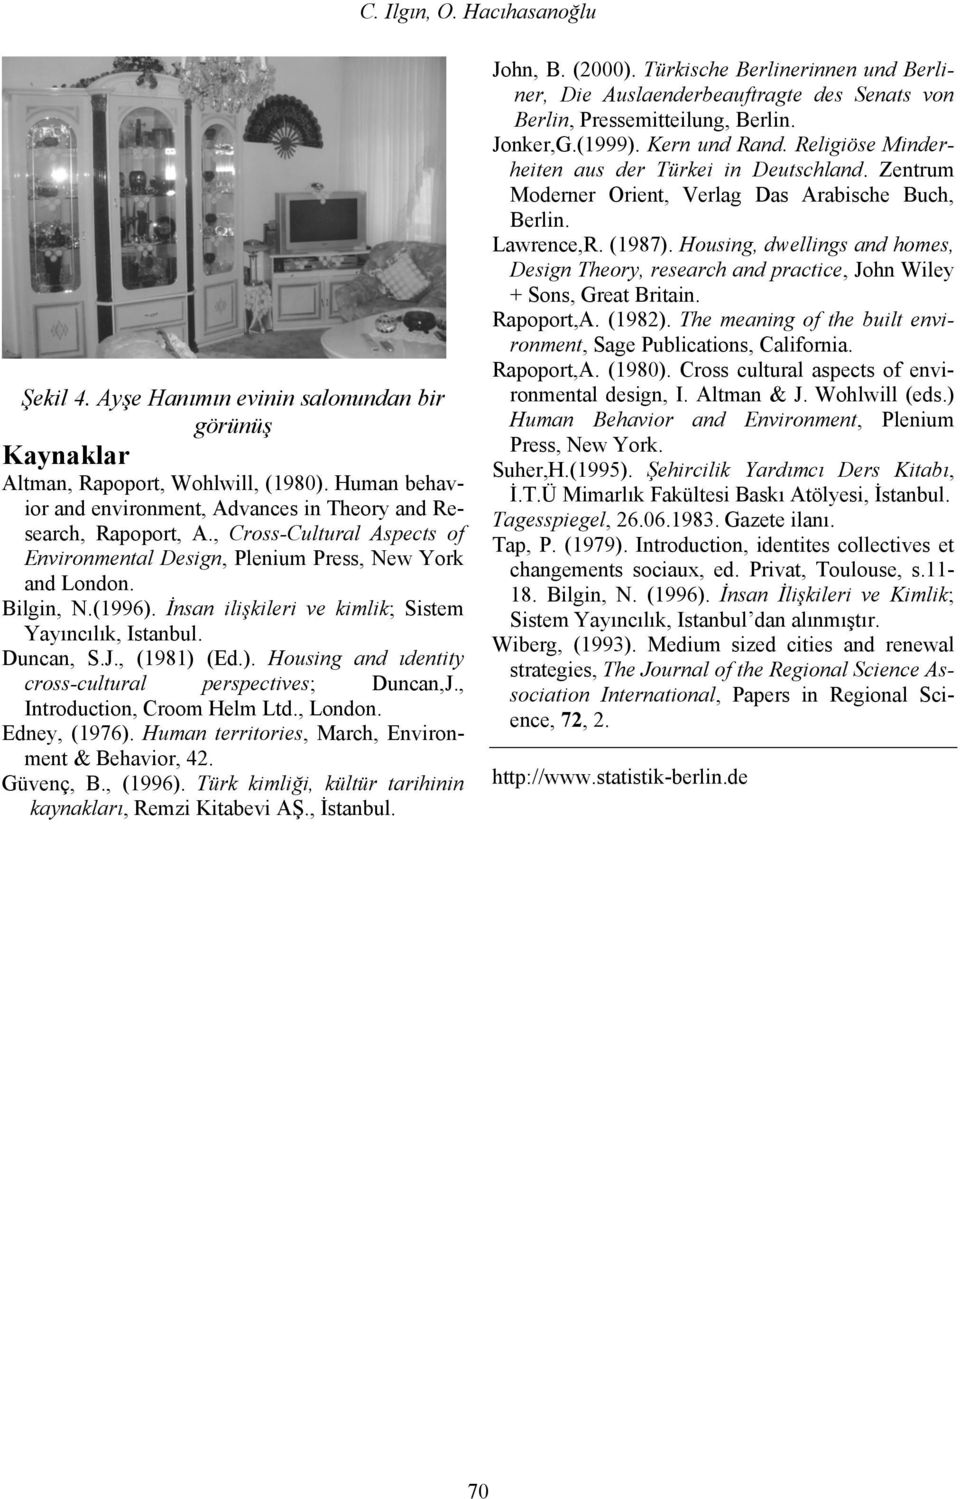 İnsan ilişkileri ve kimlik; Sistem Yayıncılık, Istanbul. Duncan, S.J., (1981) (Ed.). Housing and ıdentity cross-cultural perspectives; Duncan,J., Introduction, Croom Helm Ltd., London. Edney, (1976).